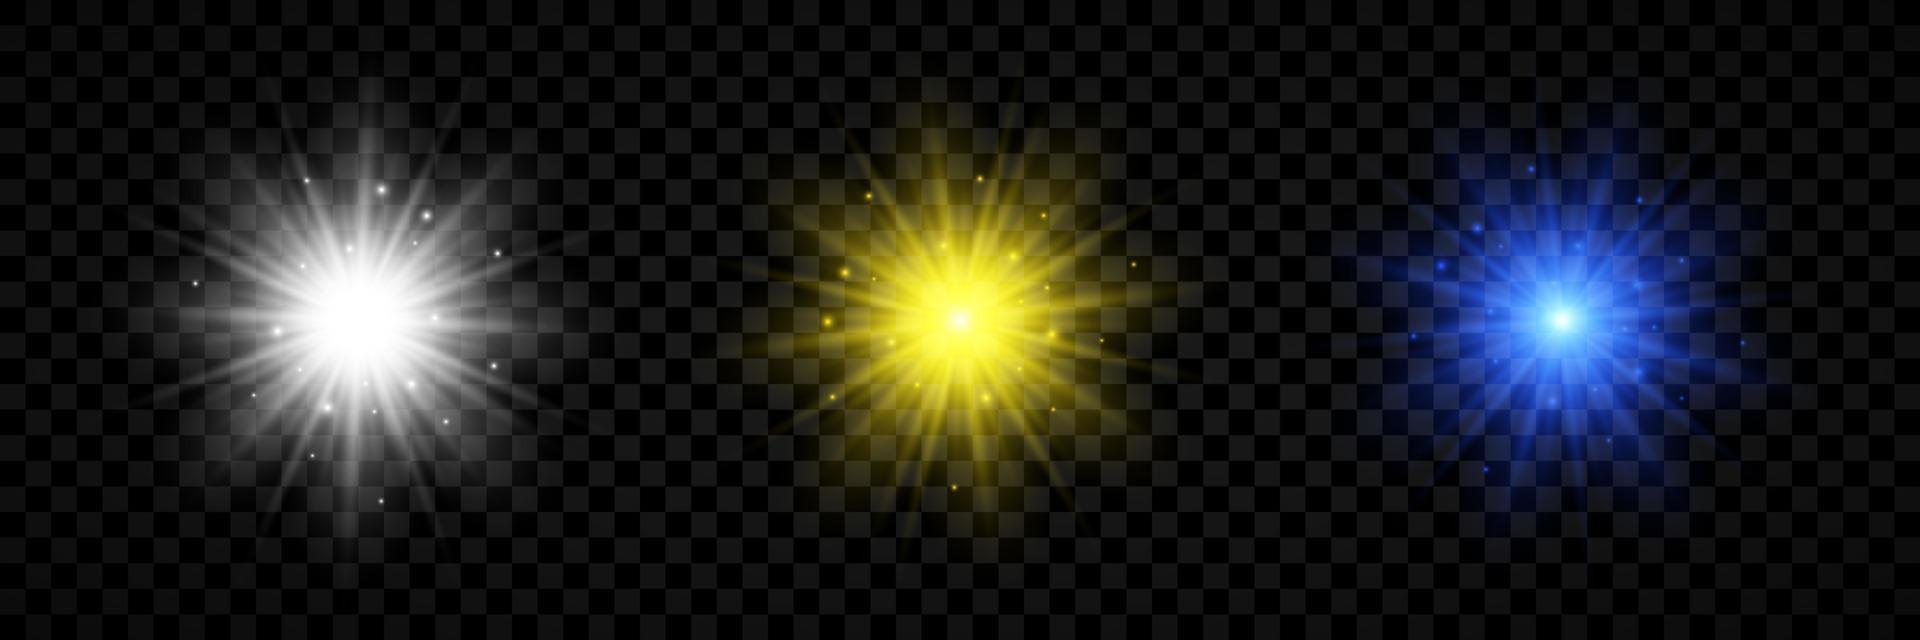 Lichteffekt von Lens Flares. satz von drei weiß, gelb und blau leuchtenden lichtern starburst-effekten mit funkeln vektor